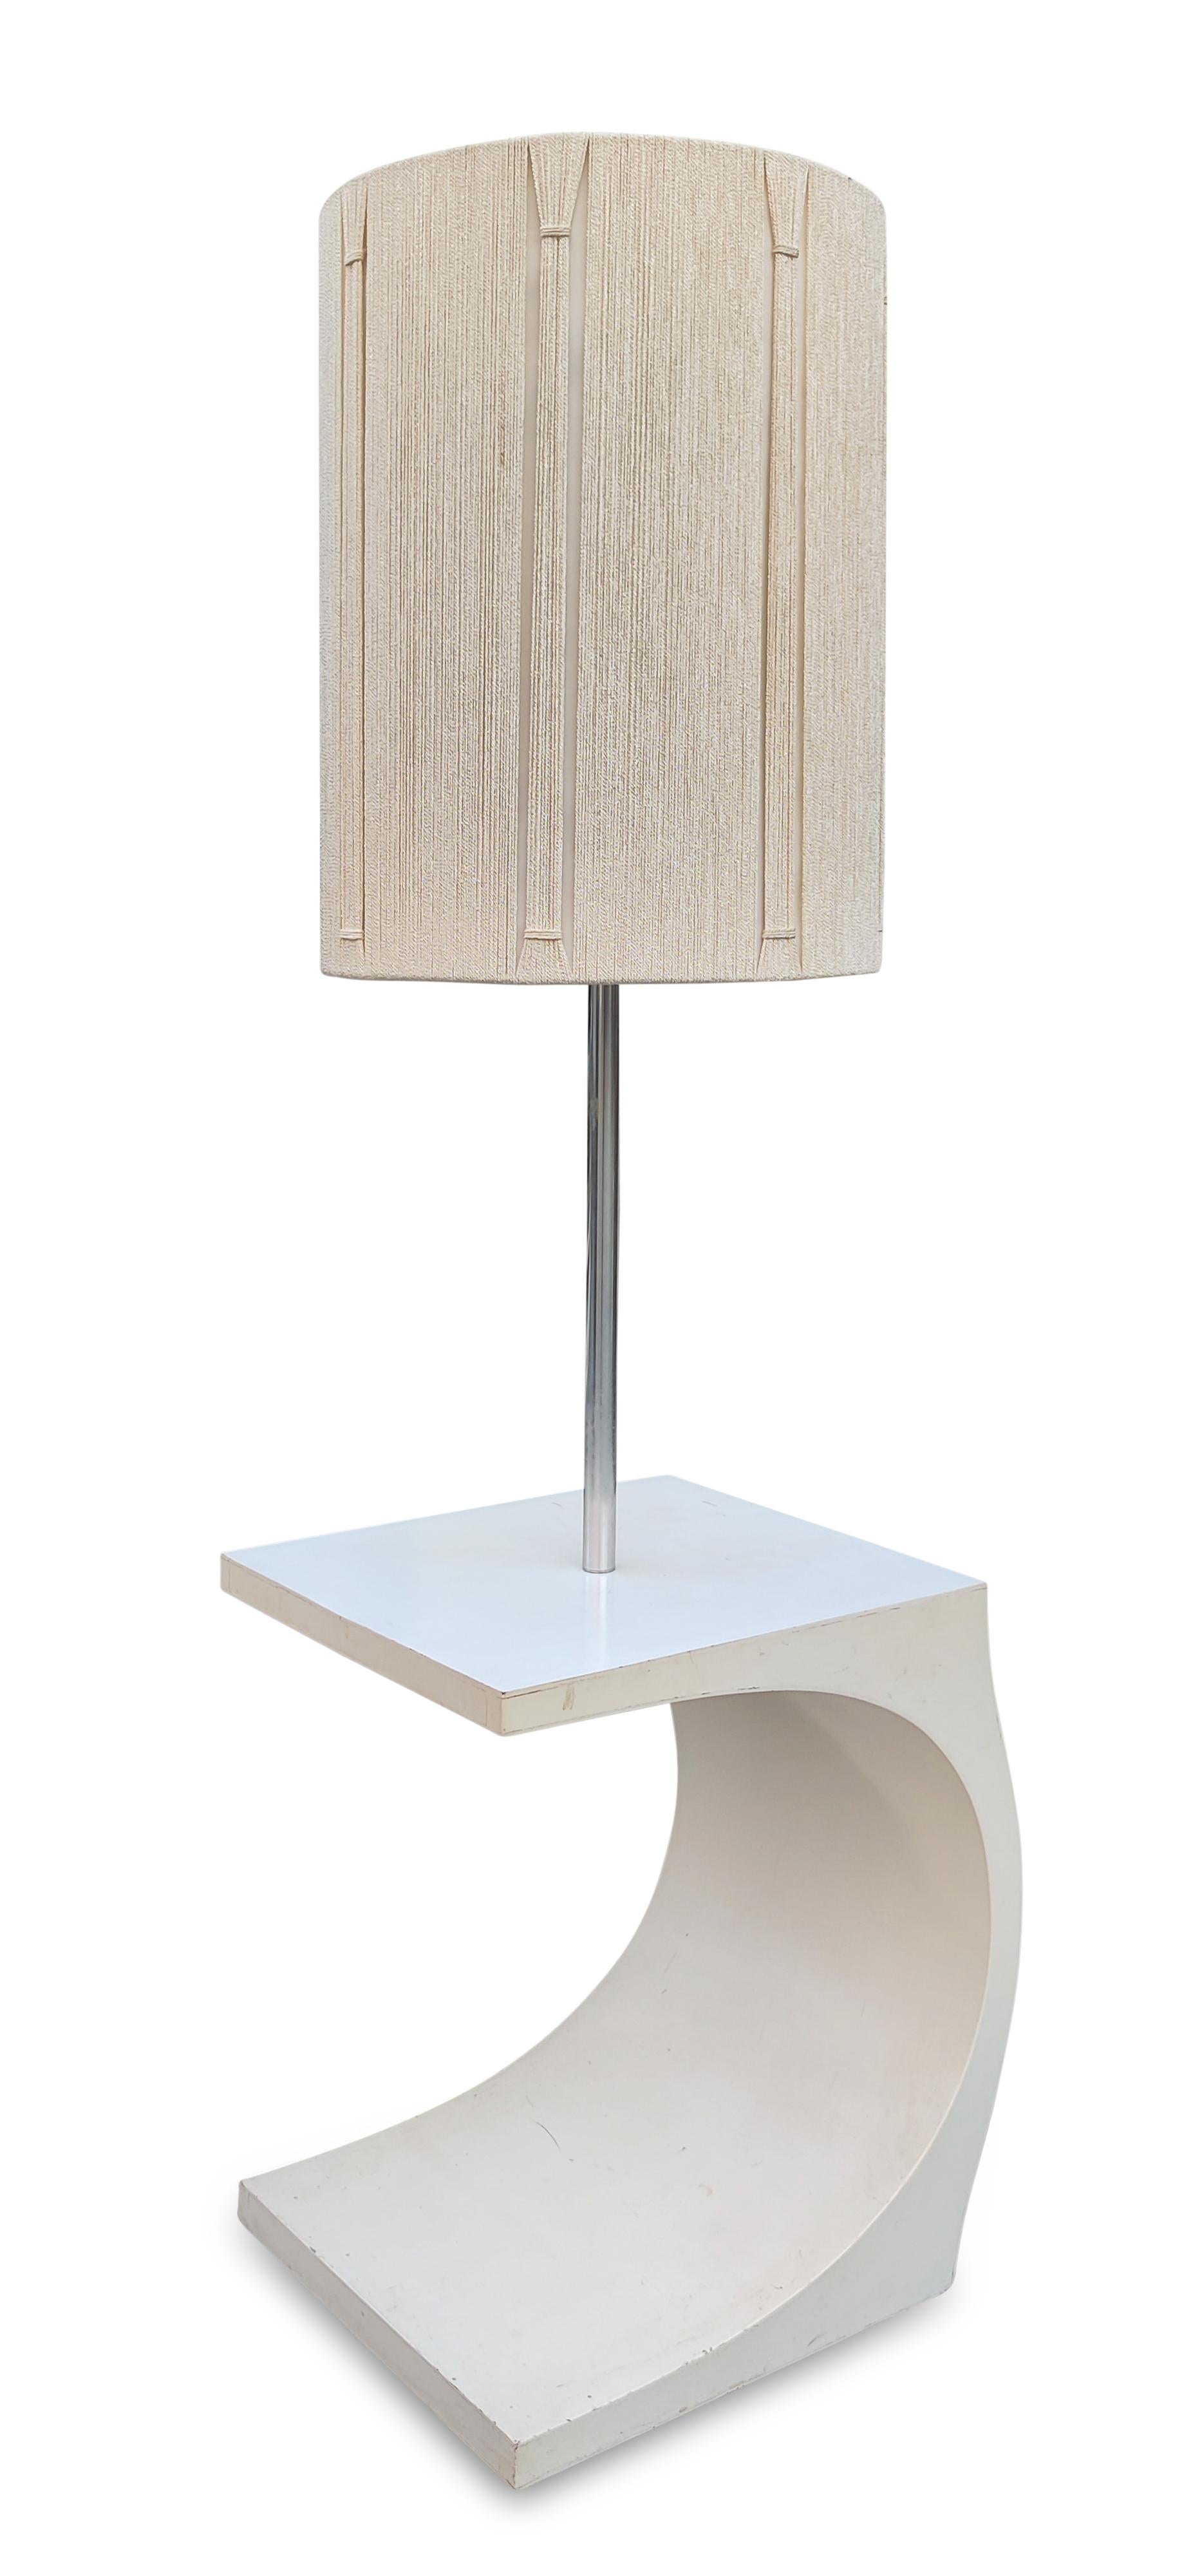 Enameled Signed Jack Haywood Lamp Table by Modeline with Original Oversize Shade